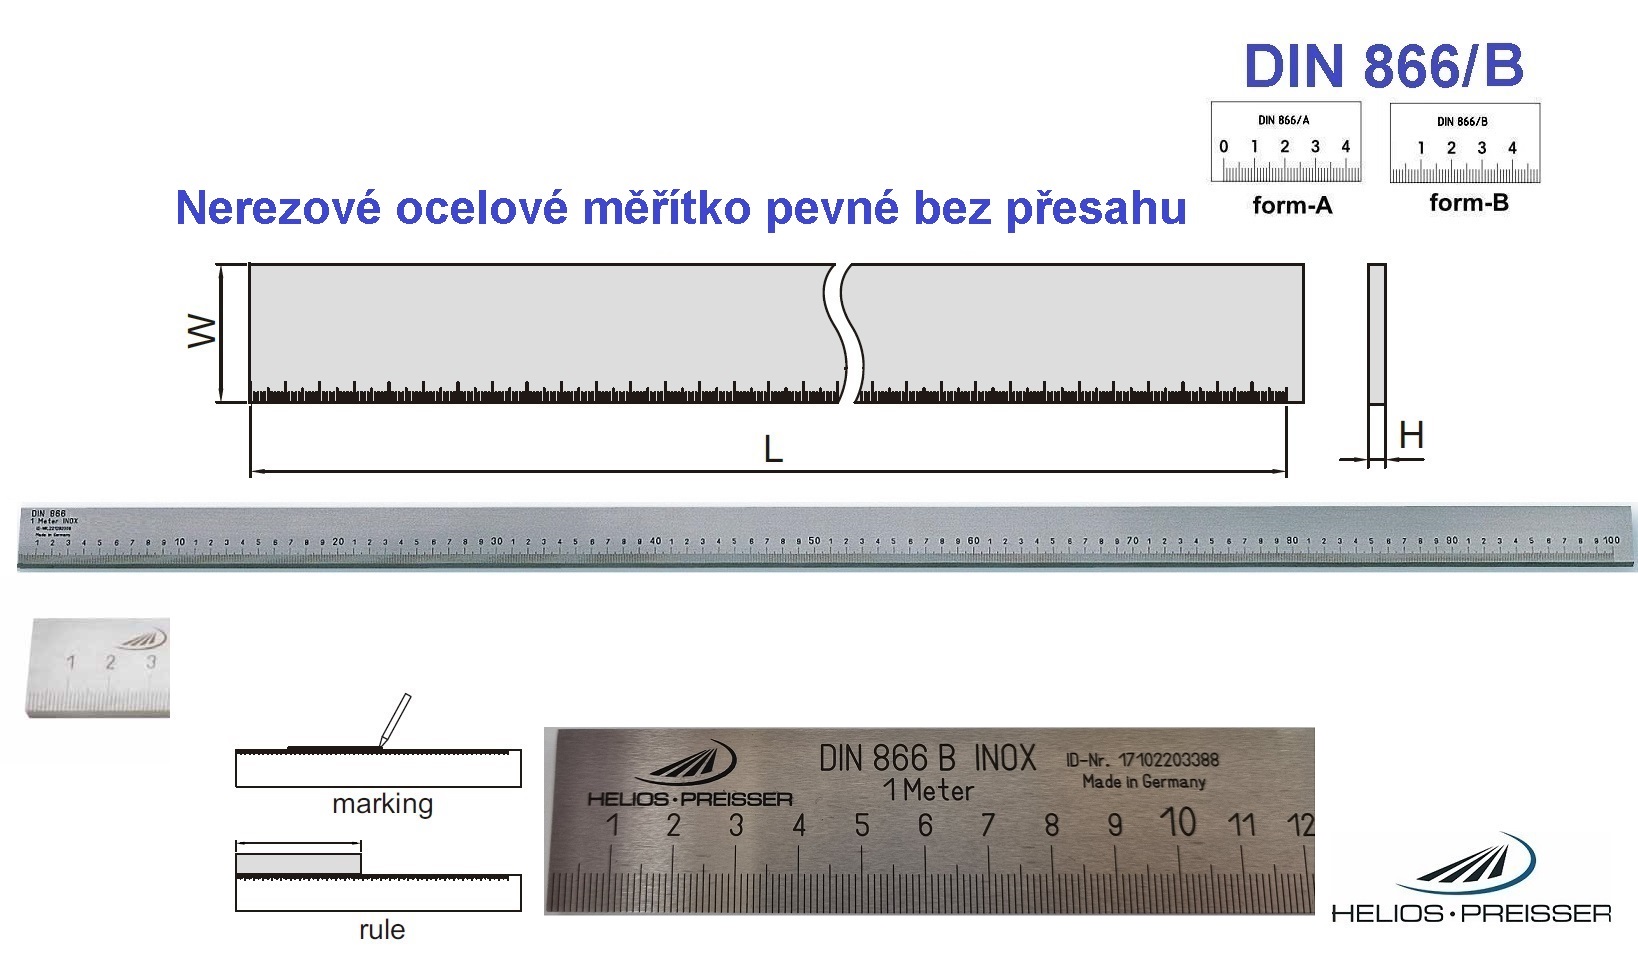 Nerezové ocelové měřítko pevné bez přesahu 2500 /40x8 mm, DIN 866/B, Helios-Preisser